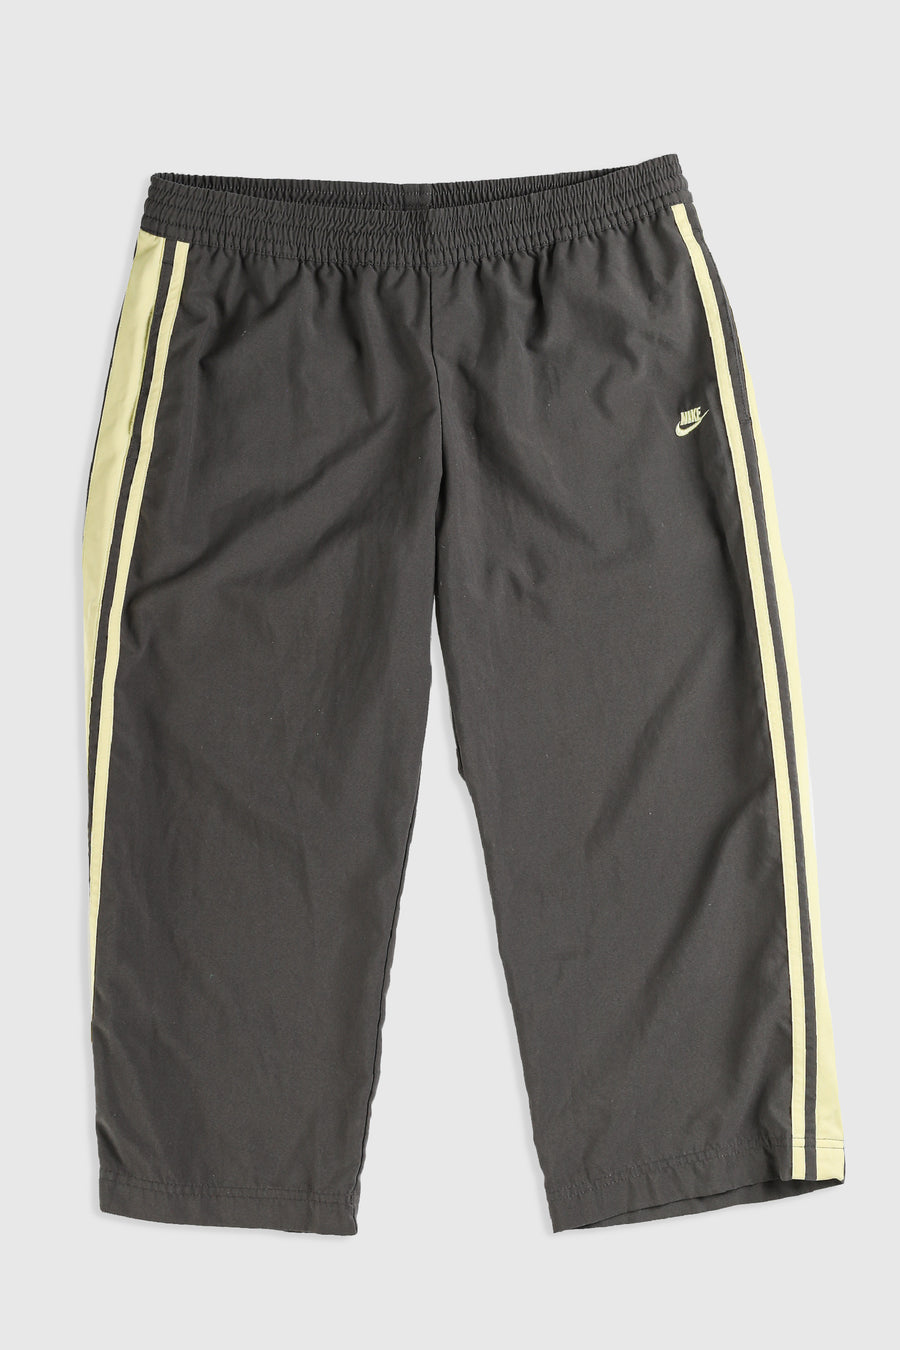 Vintage Nike Capri Pants - M